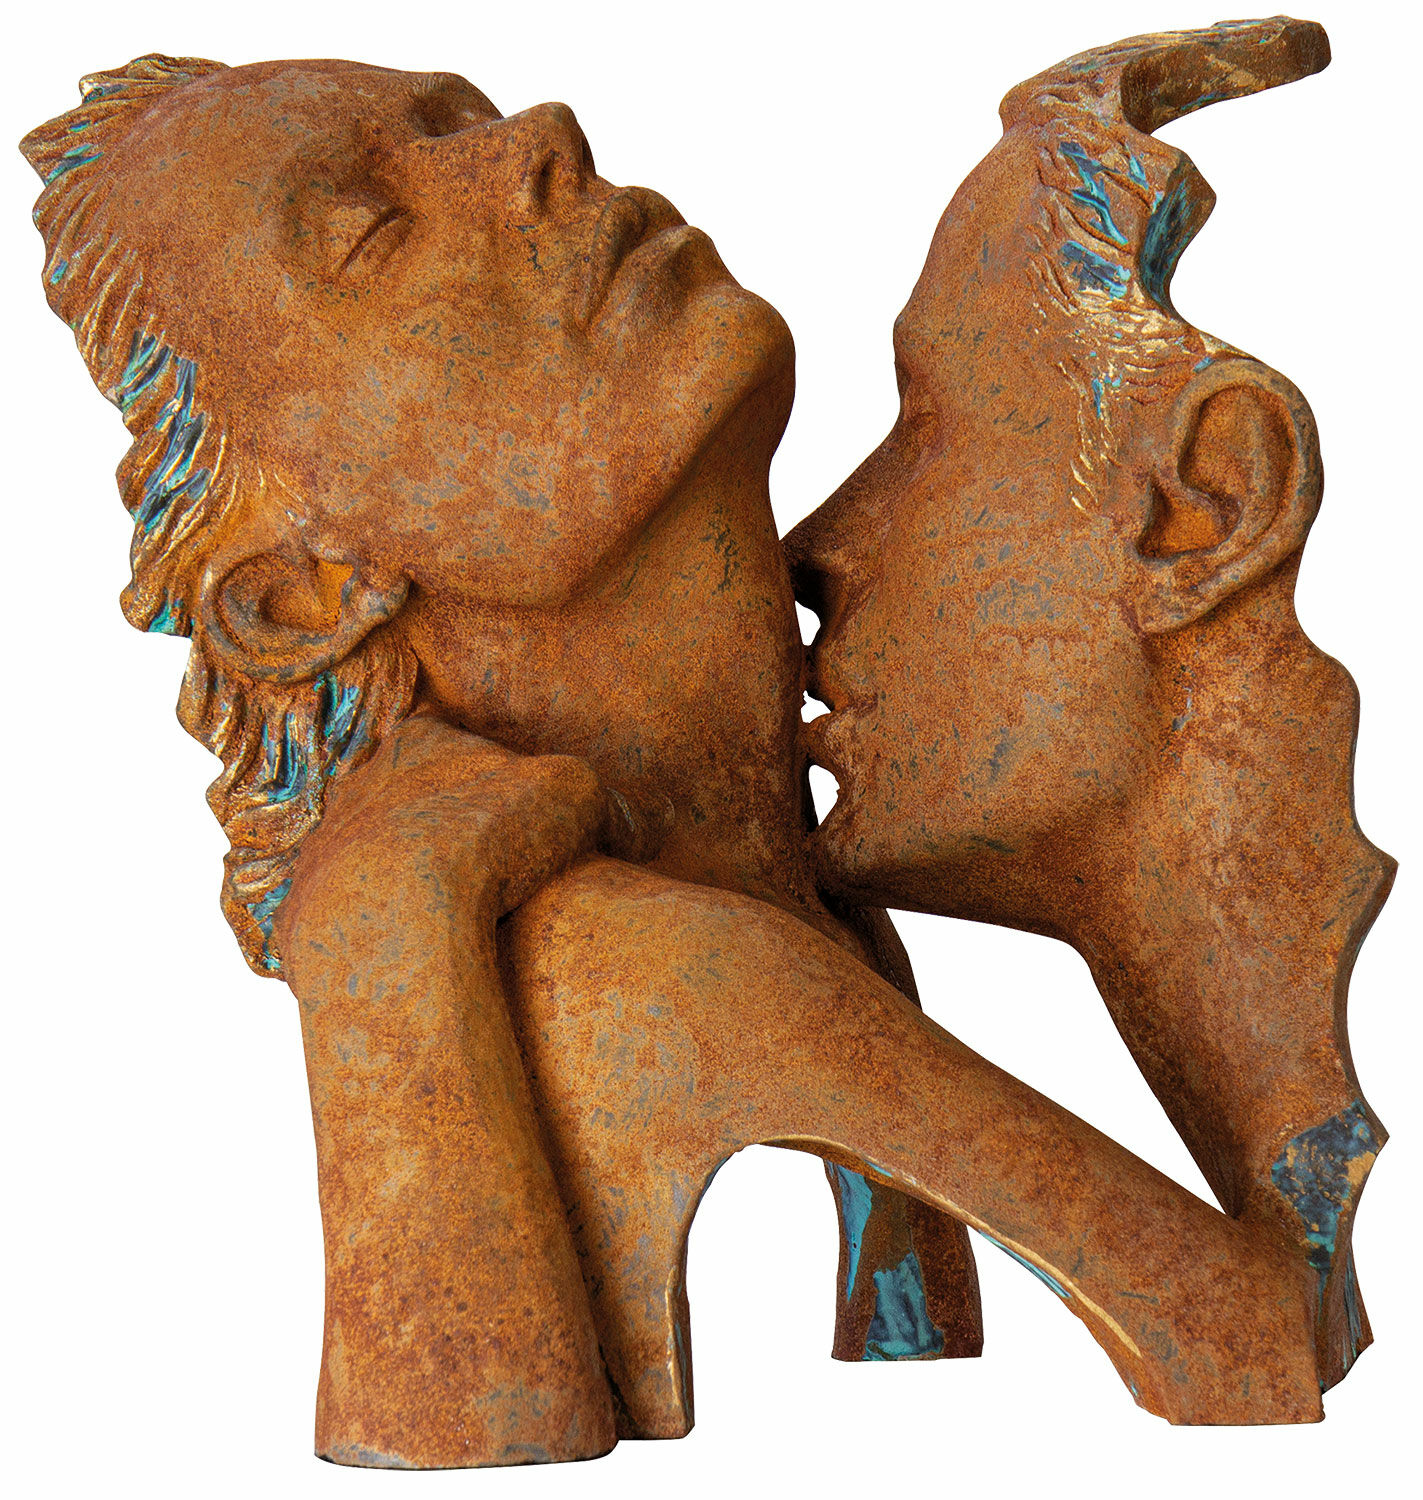 Skulptur "Seduction", kunstig sten von Angeles Anglada